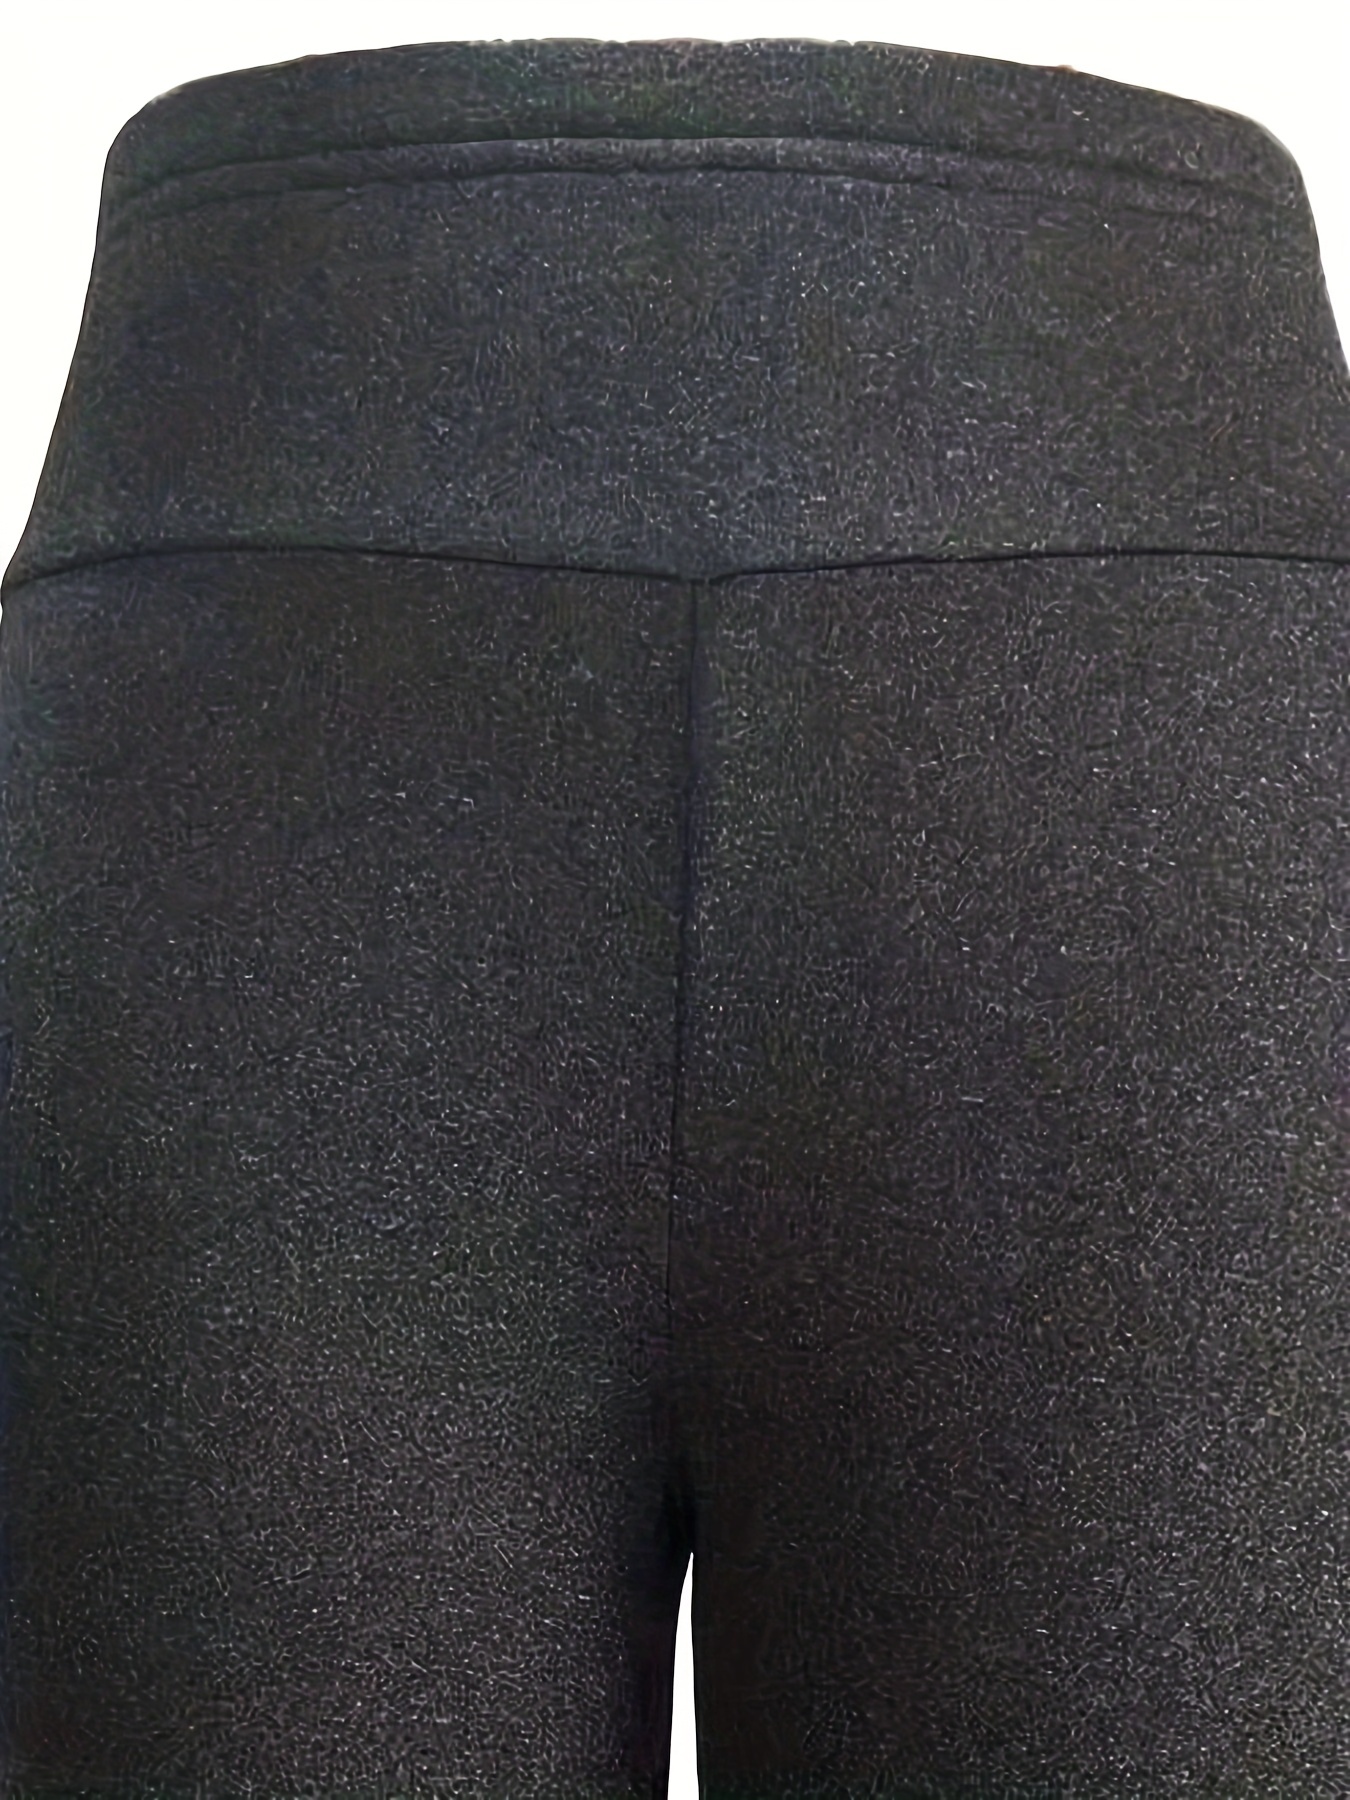 Solid Fleece Skinny Leggings 秋冬用のカジュアルなサーマルストレッチレギンス 女性用衣料品 - Temu Japan